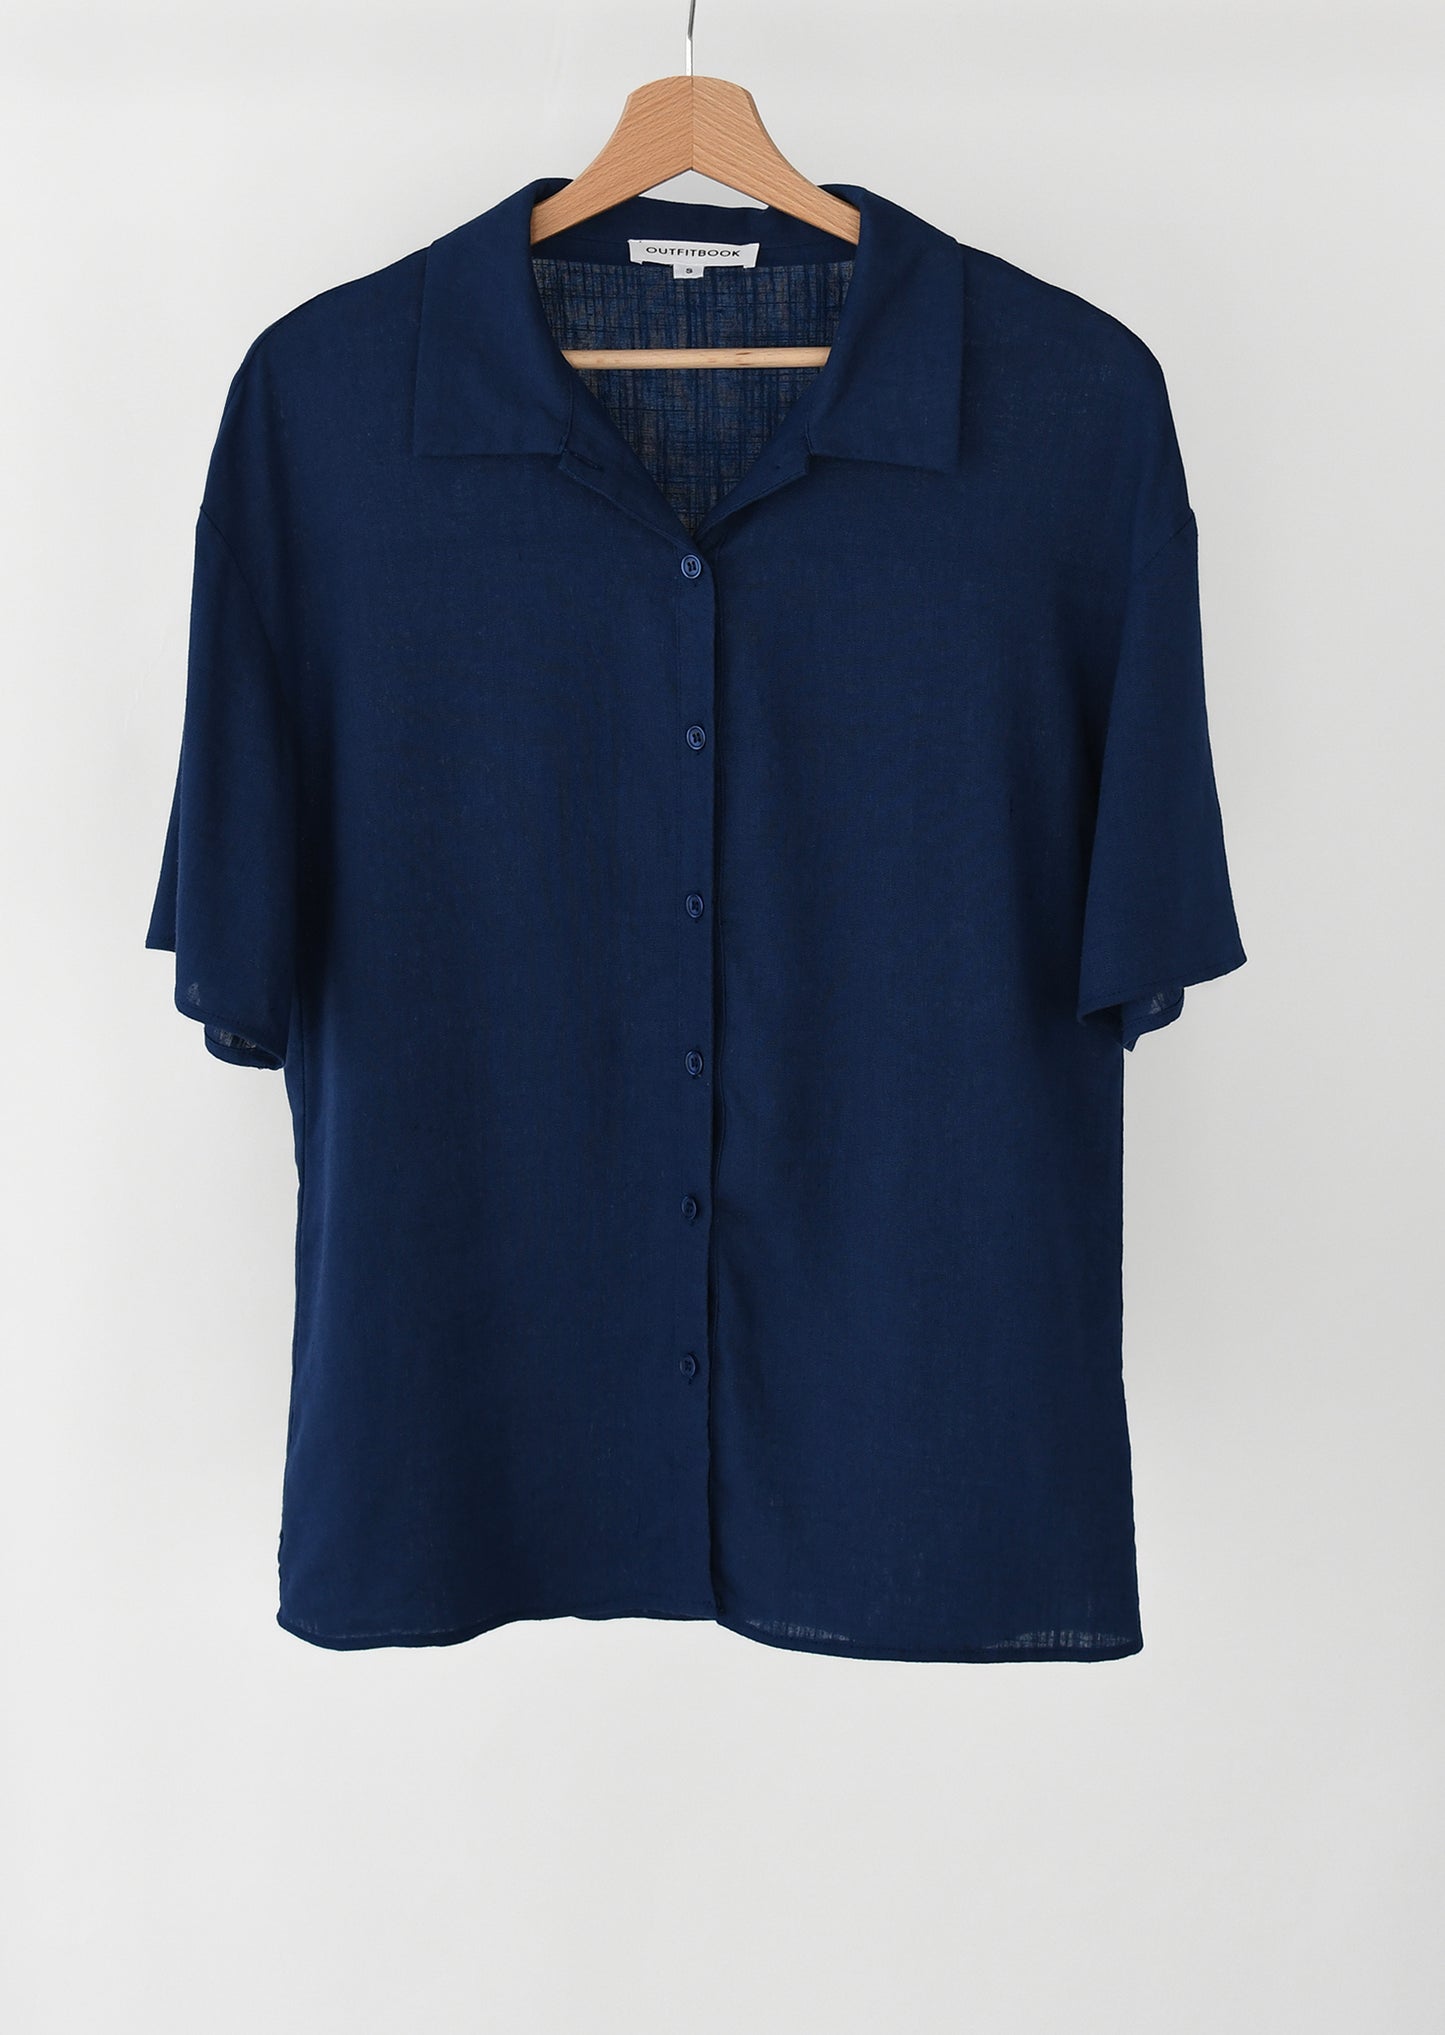 Navy blue short sleeve linen shirt